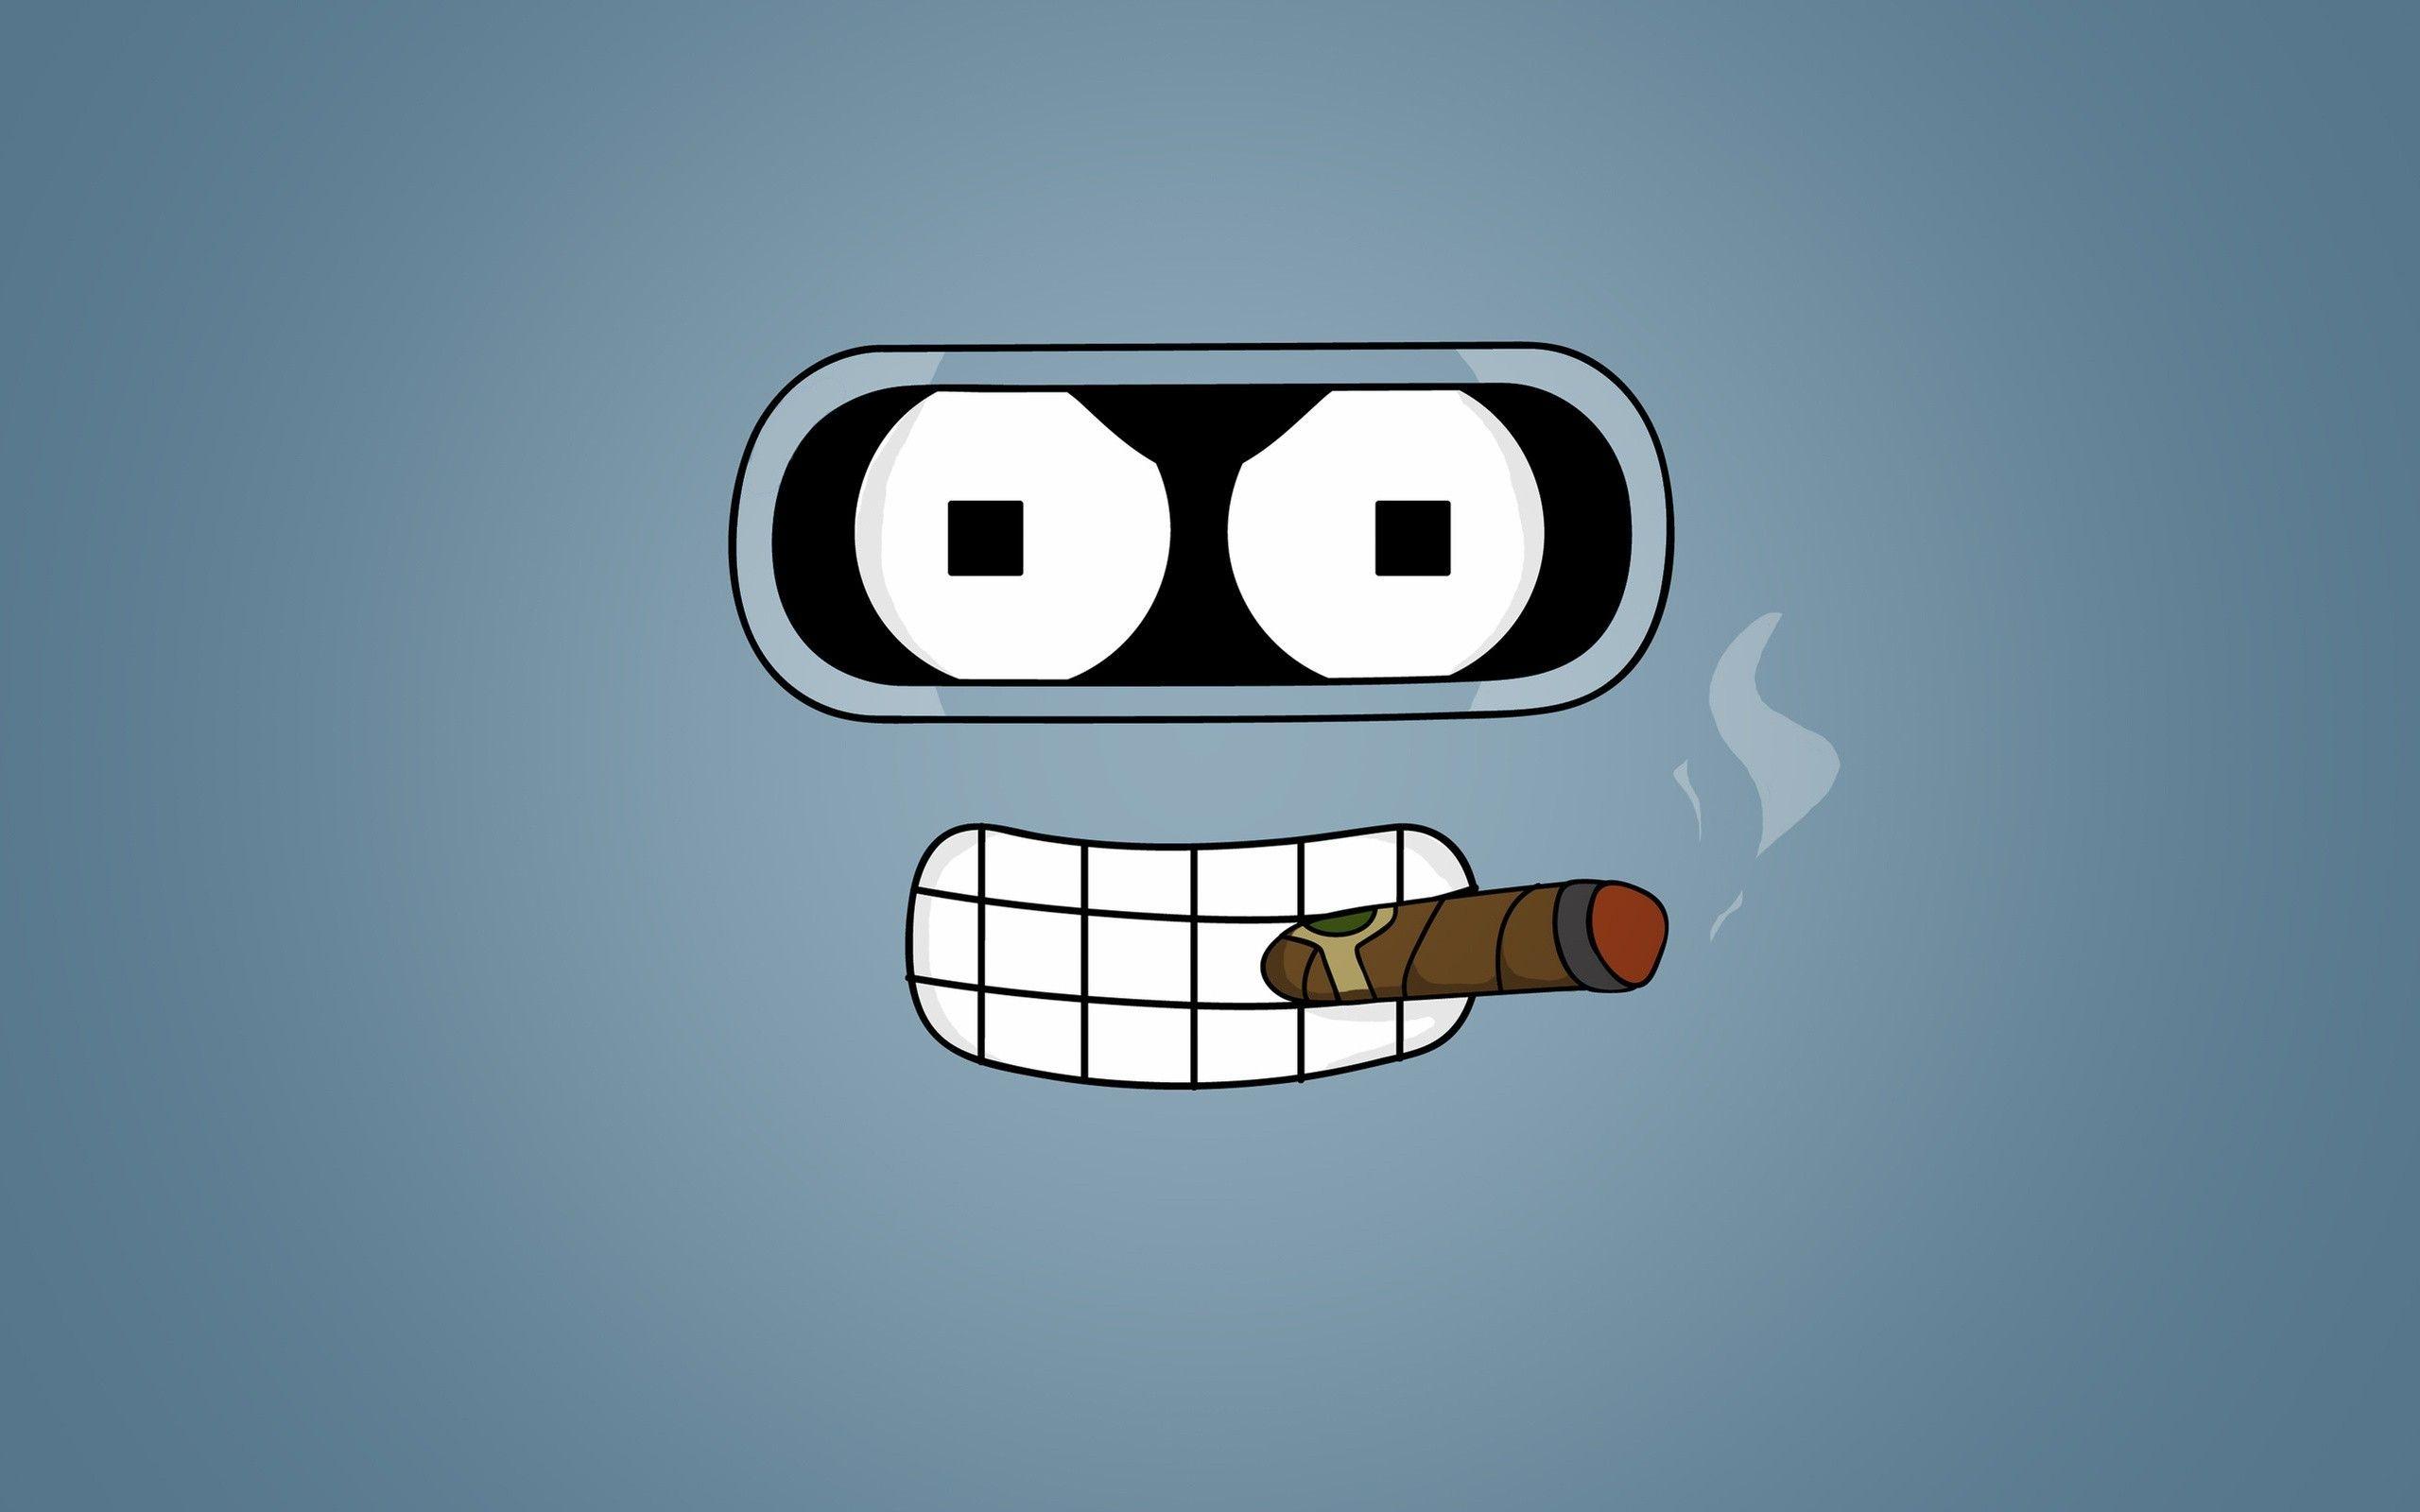 Bender Logo - Wallpaper : illustration, text, logo, cartoon, brand, Futurama ...